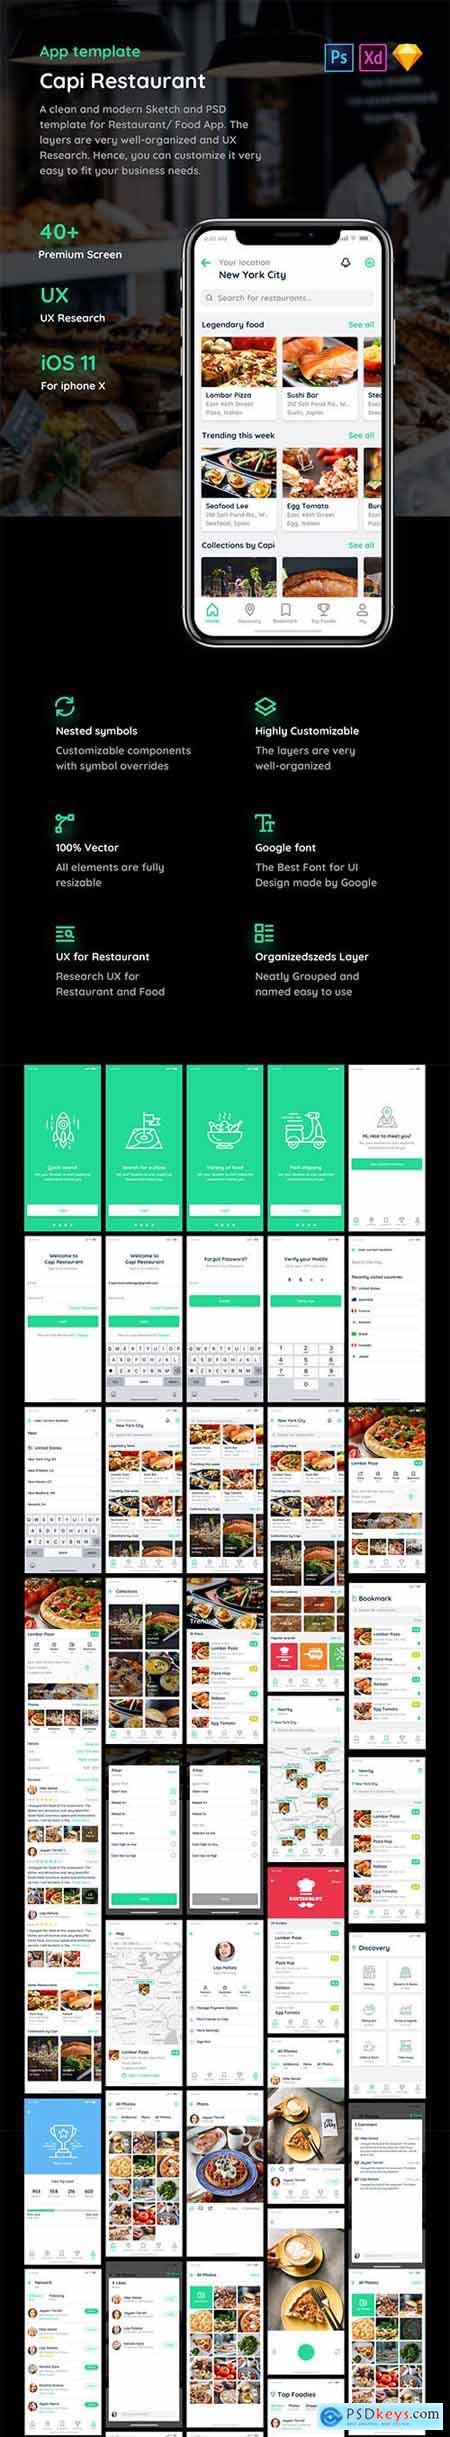 Capi Restaurant iOS UI Kit (Update)